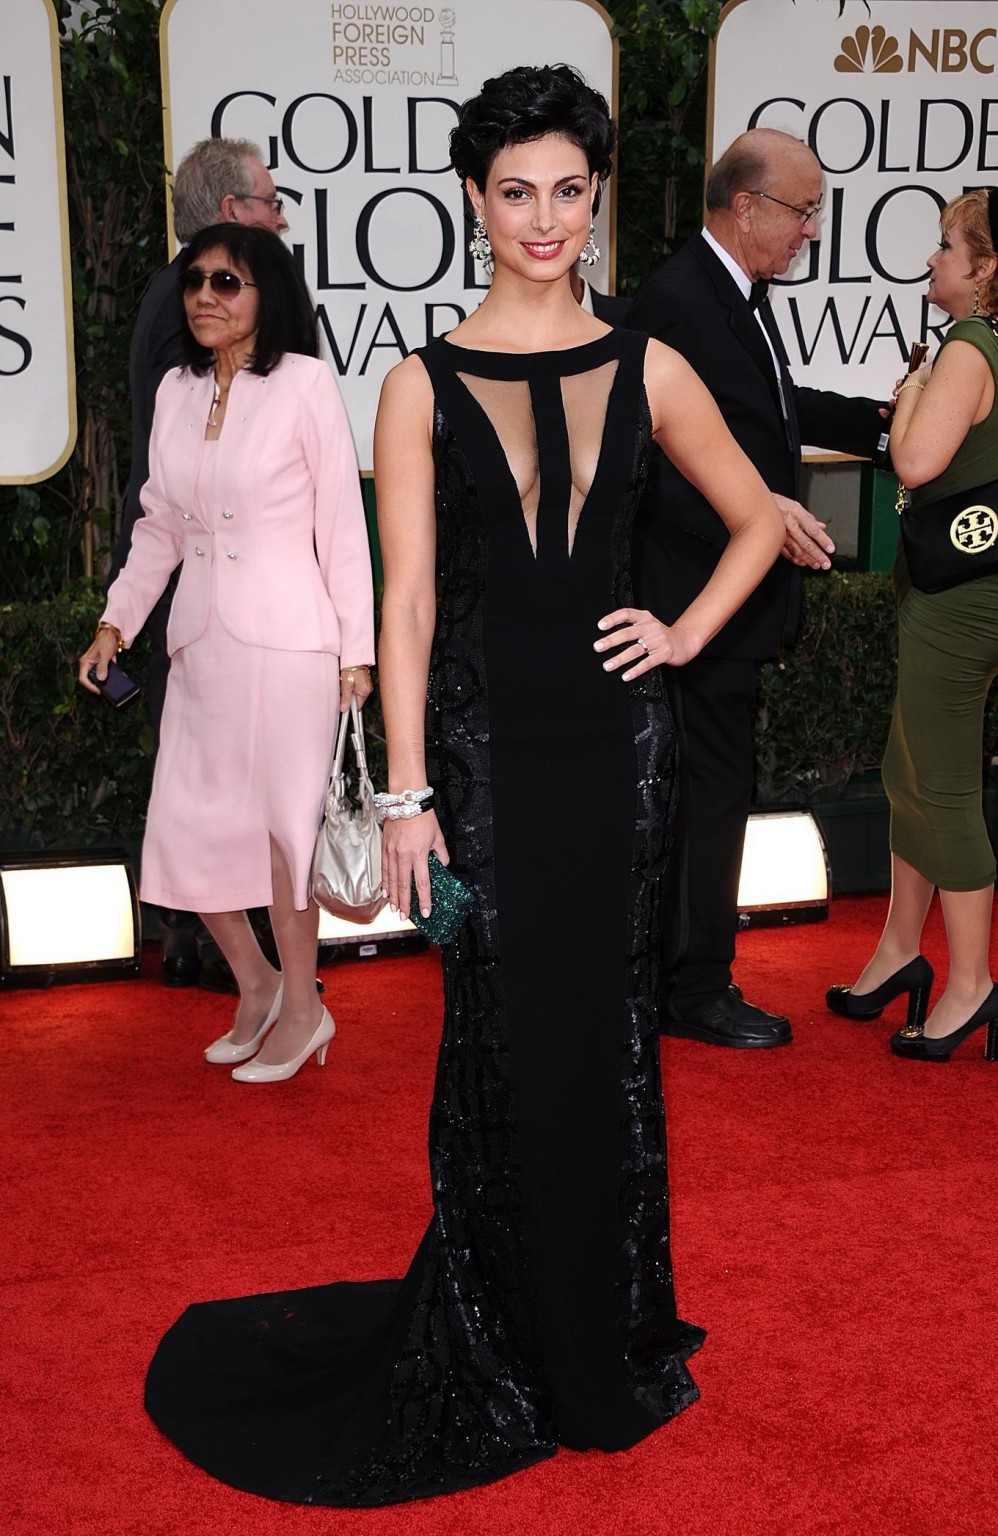 Morena Baccarin sans soutien-gorge portant une robe noire sexy aux Golden Globes 2012.
 #75276516